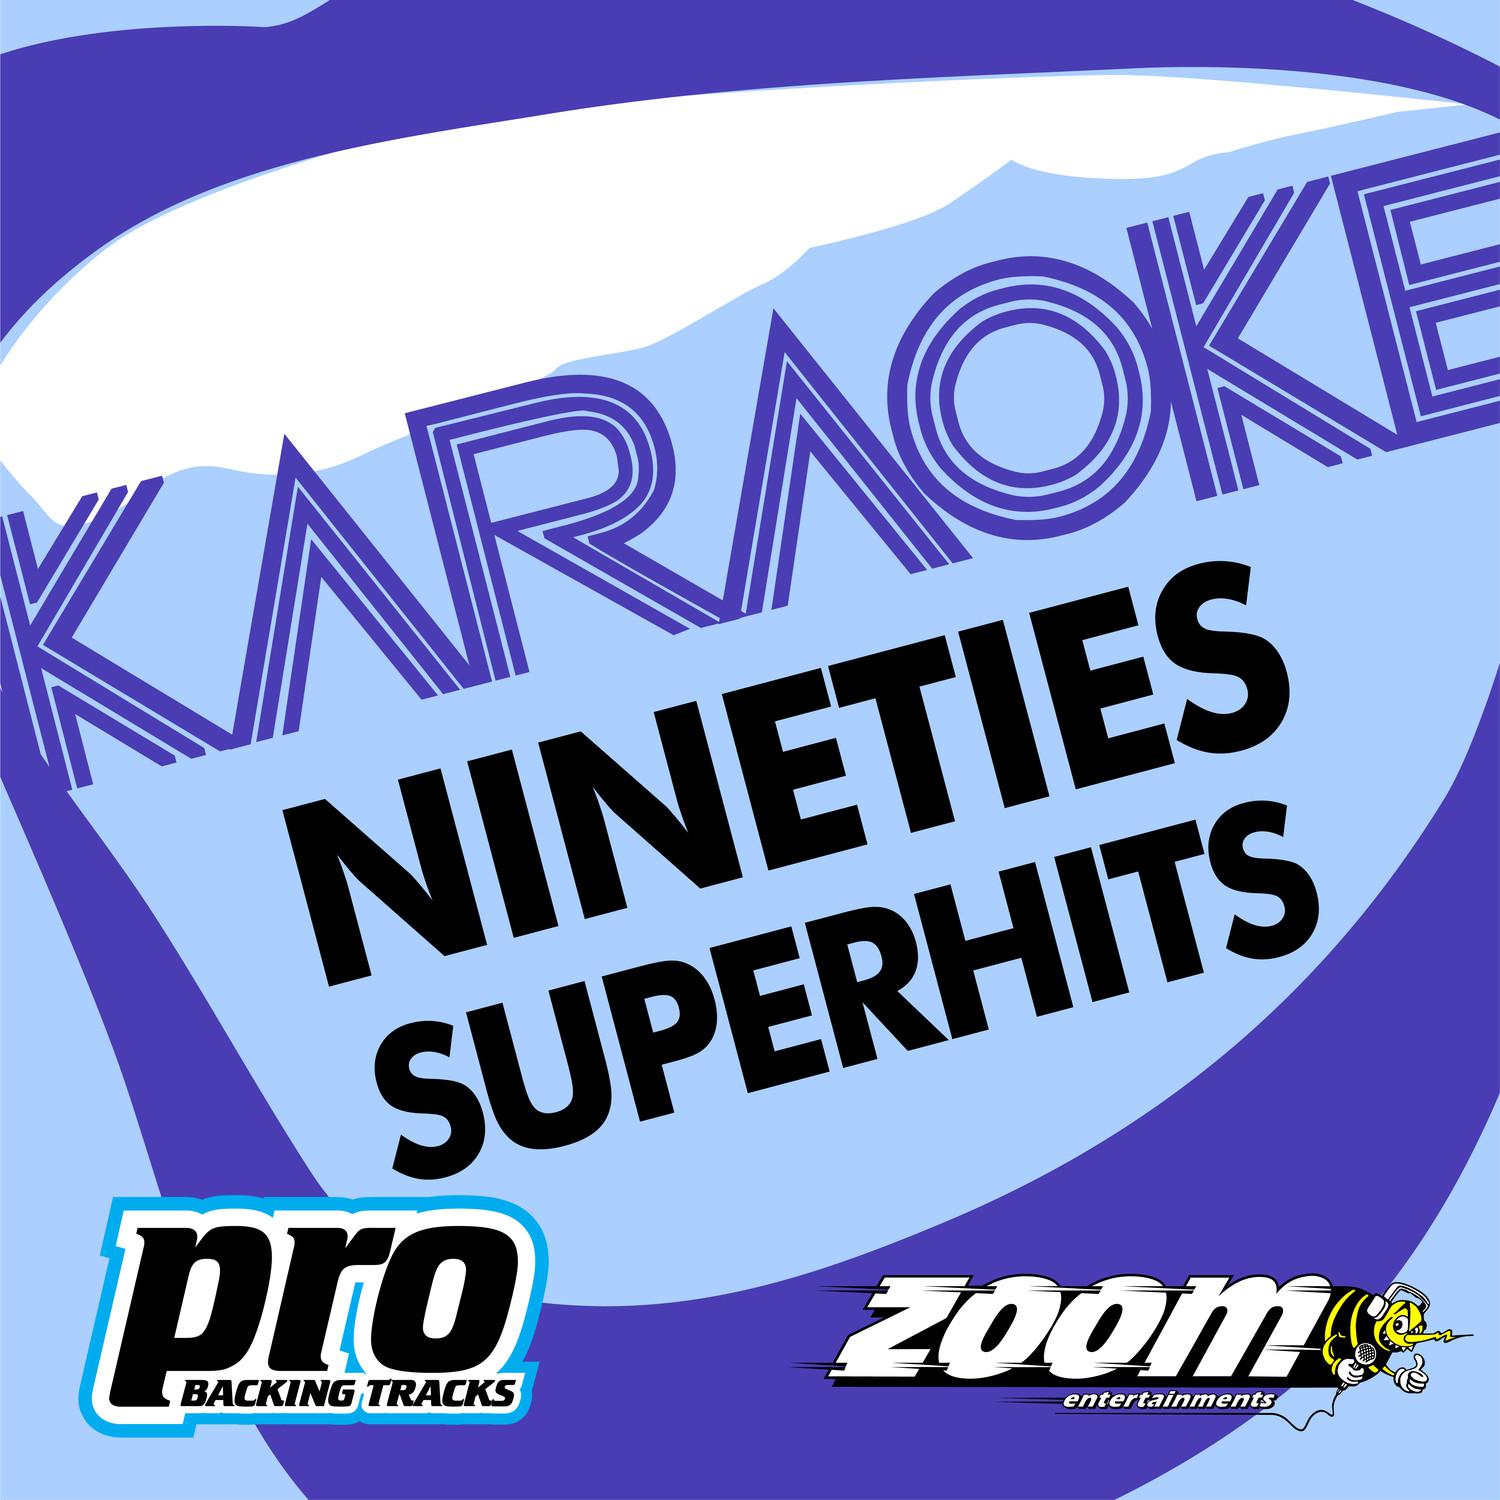 Zoom Karaoke - Nineties Superhits 3